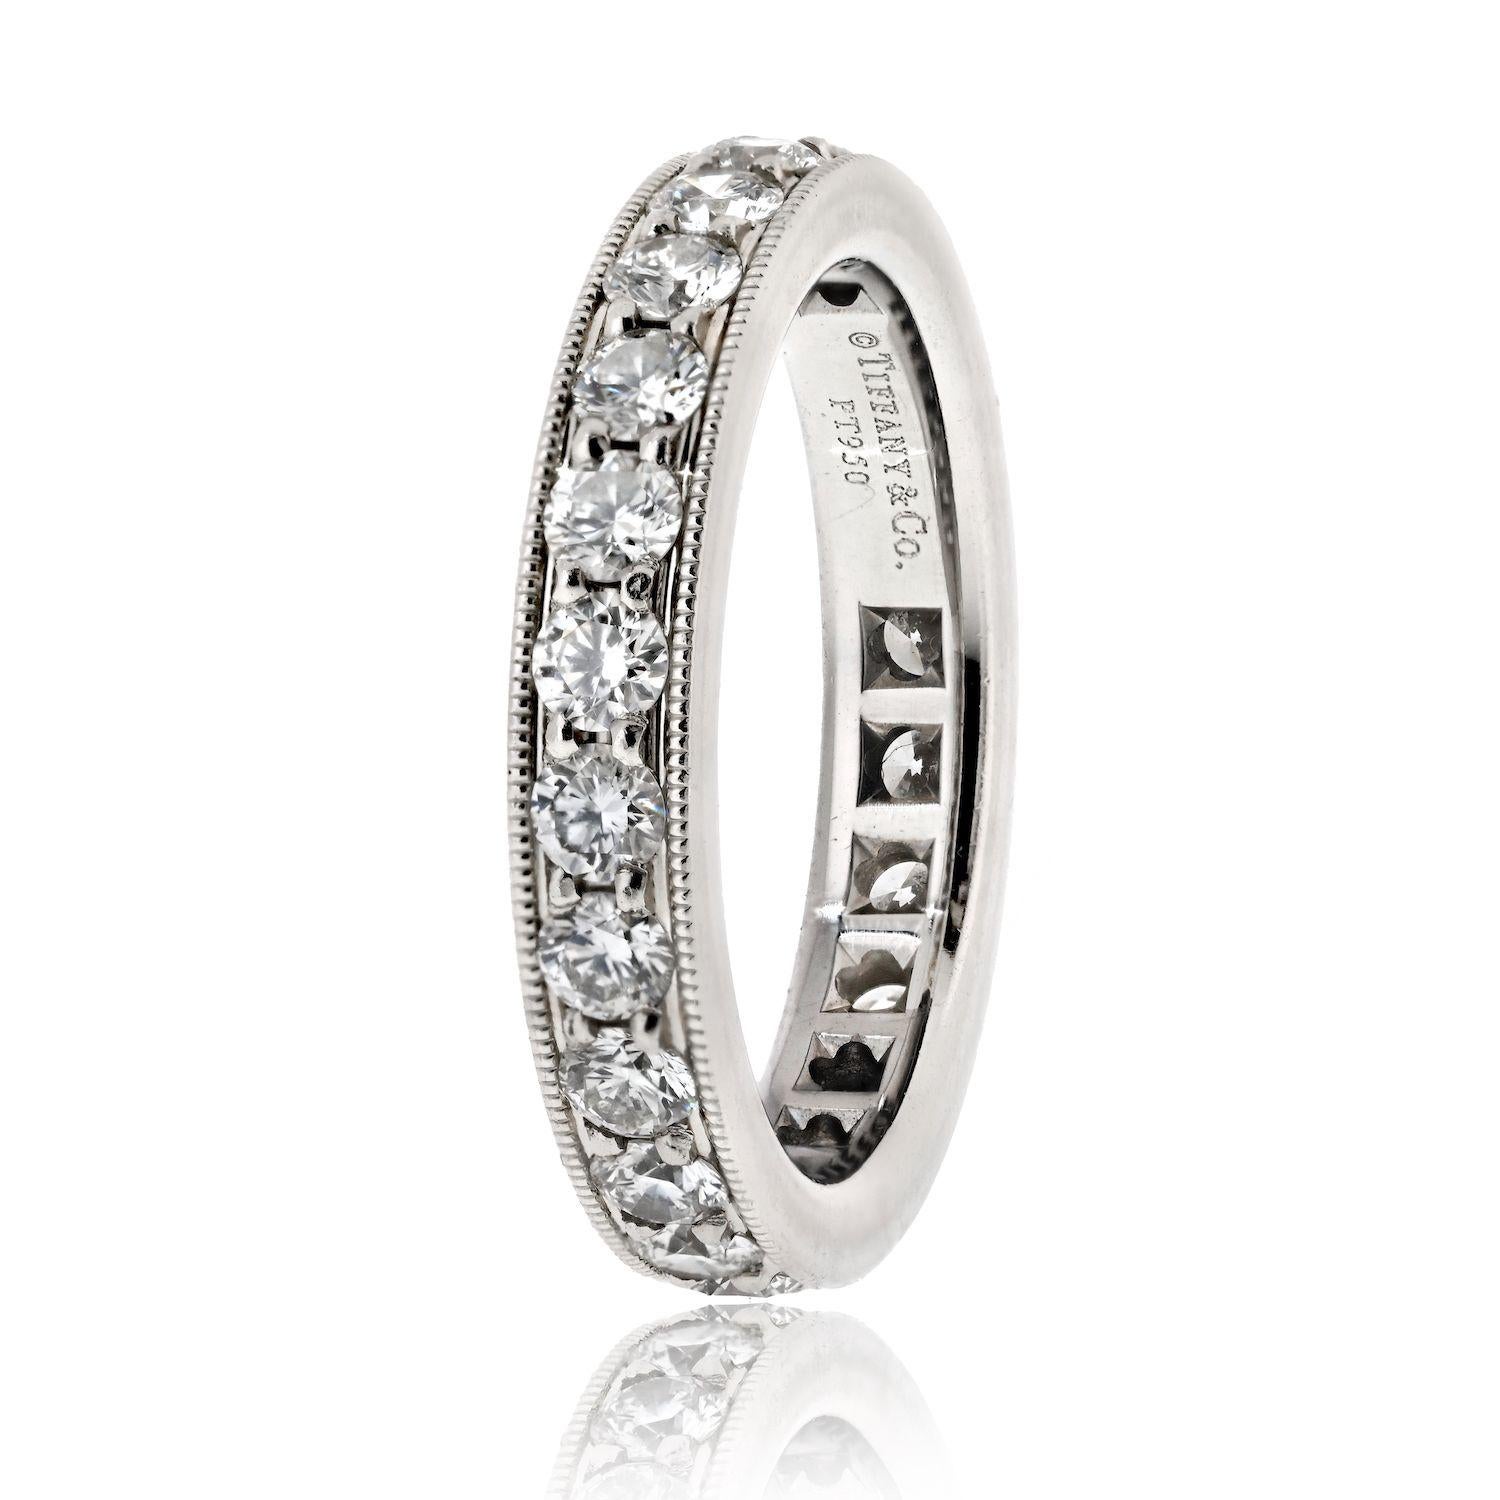 Verschönern Sie Ihre Liebesgeschichte mit der zeitlosen Eleganz eines Estate Tiffany & Co. Legacy Platinum 1.50cttw Round Diamond Ring, ein Symbol der dauerhaften Verpflichtung und unvergleichlicher Schönheit. Mit einer Passform von Größe 6 und